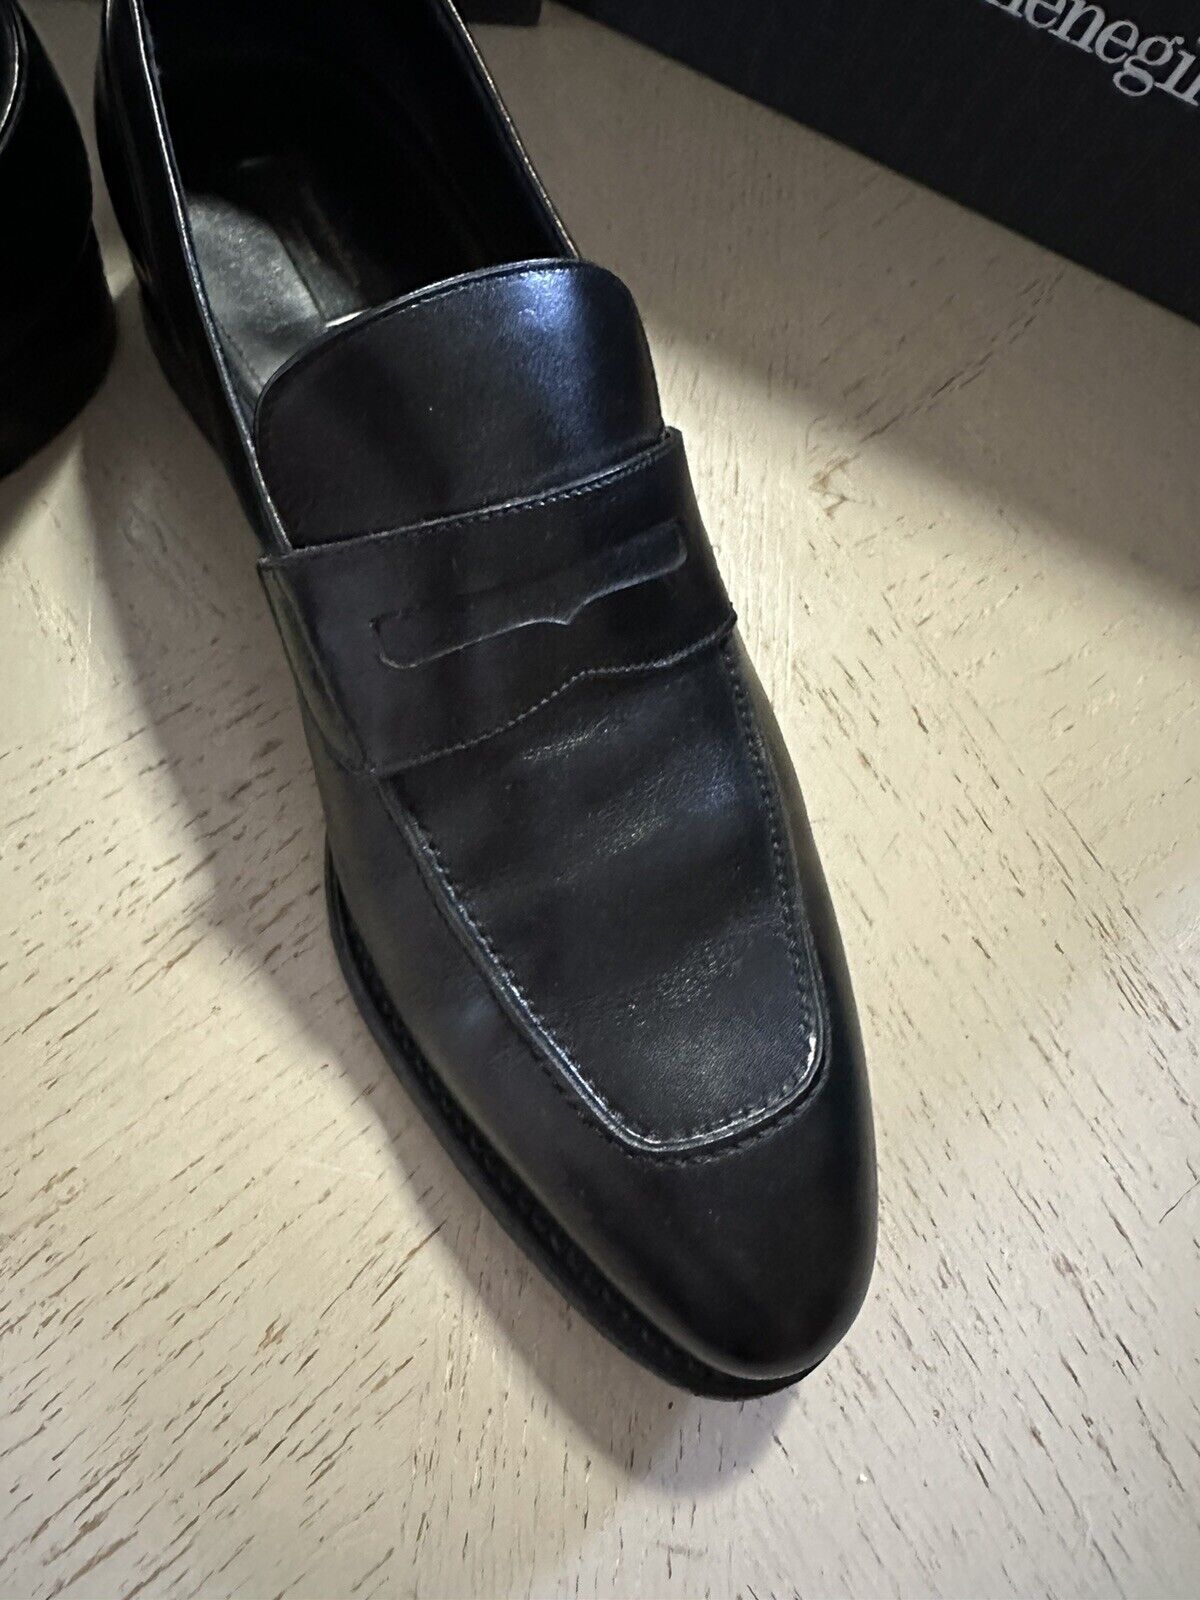 1395 $ Ermenegildo Zegna Couture Leder-Loafer-Schuhe Schwarz 10 US/43 Eu Italien